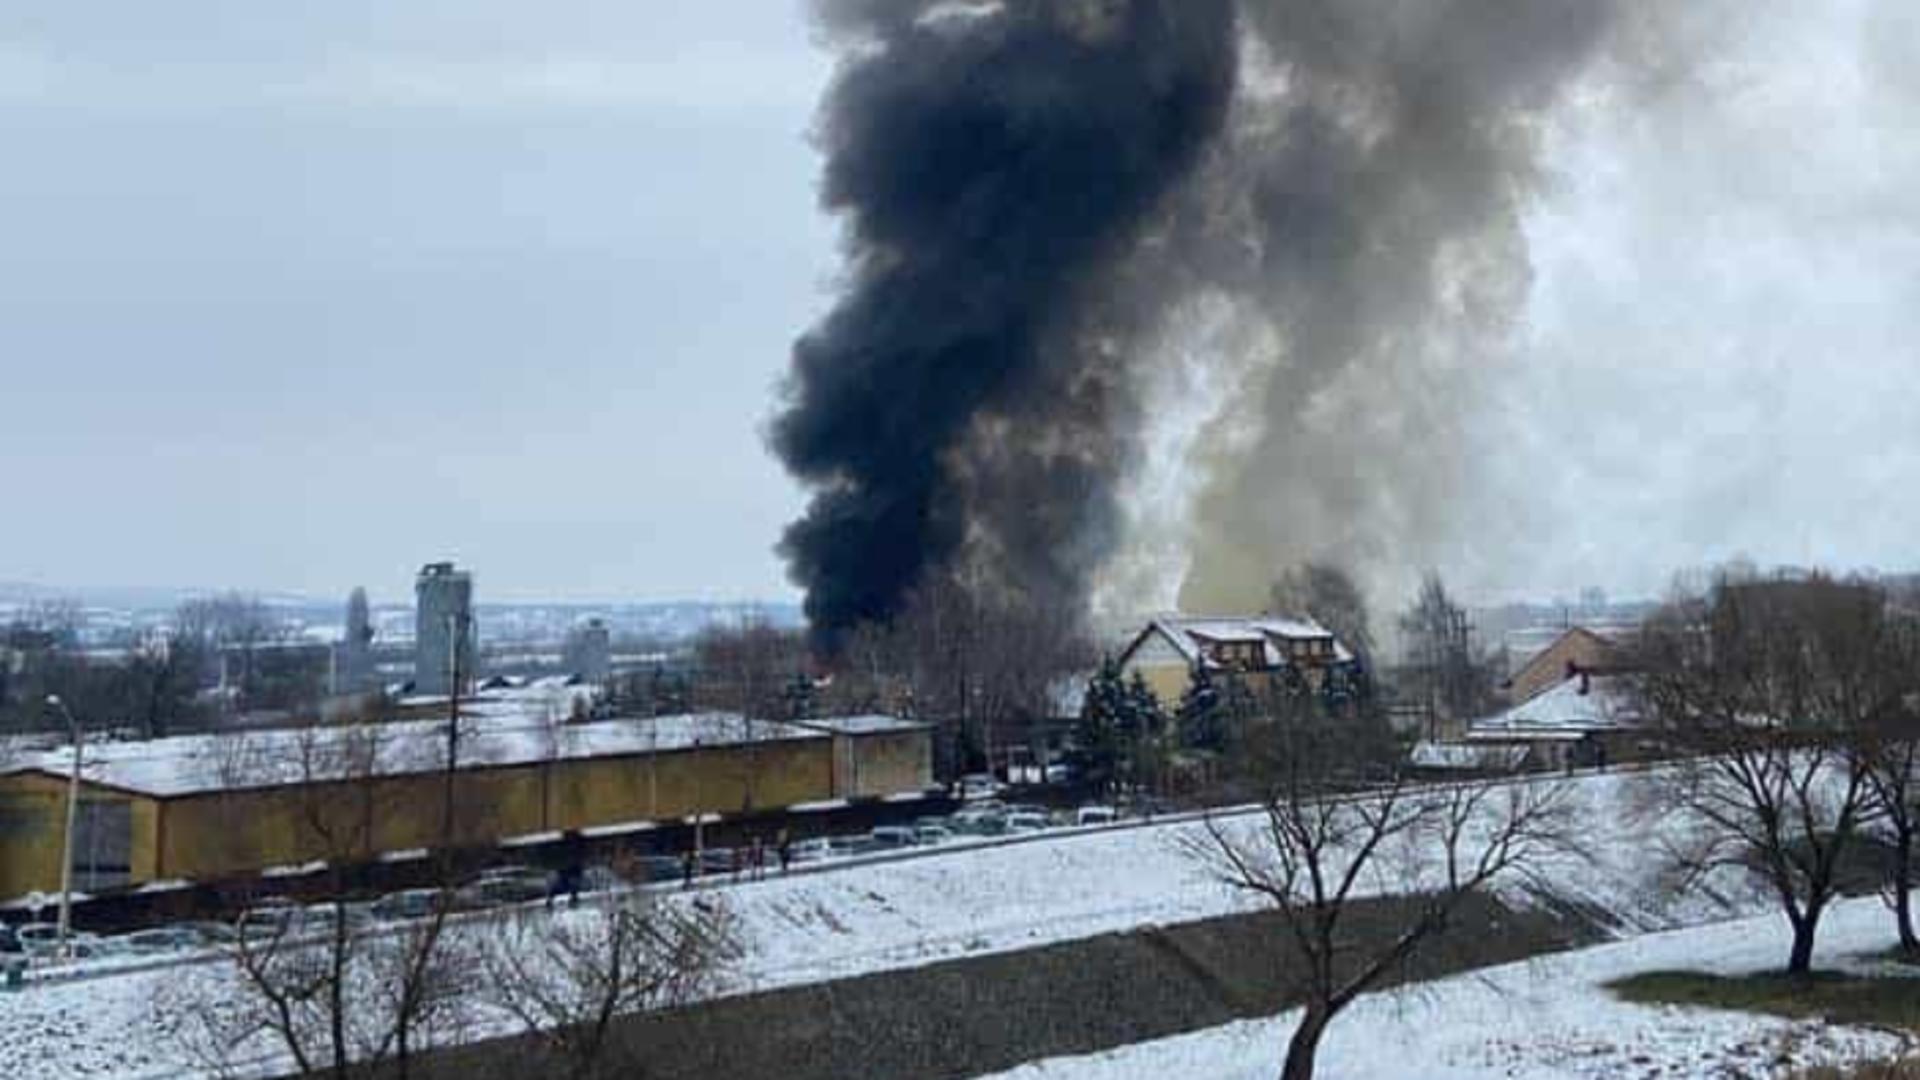 Incendiu devastator în Mureș, cu degajare de fum dens, la un depozit de mașini și îngrășăminte - 1.000 de metri pătrați, în flăcări